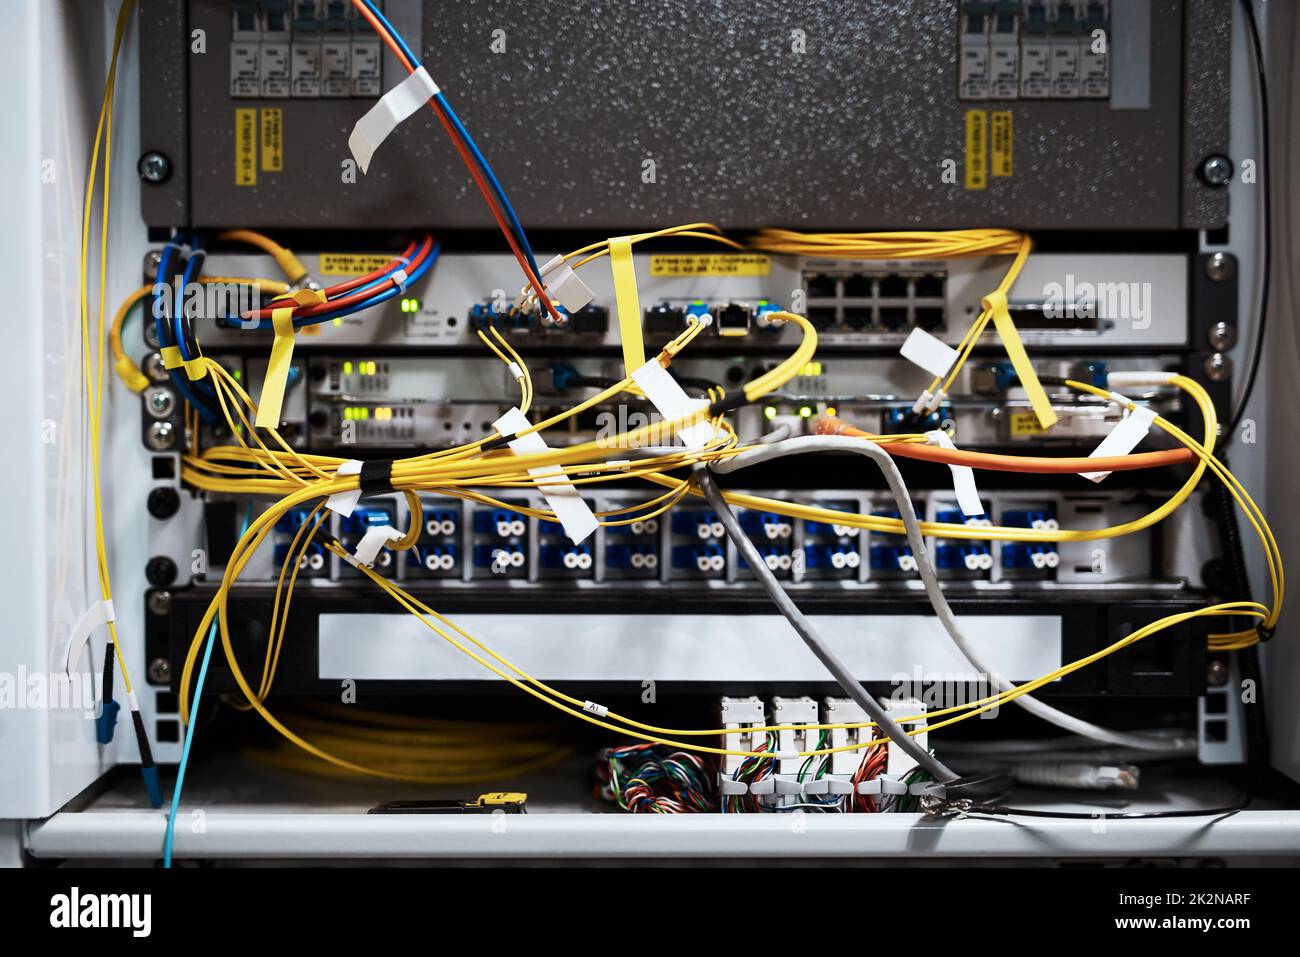 Toutes les bonnes connexions. Plan rogné de l'intérieur d'un ordinateur avec tout son câblage situé dans une salle de serveurs. Banque D'Images